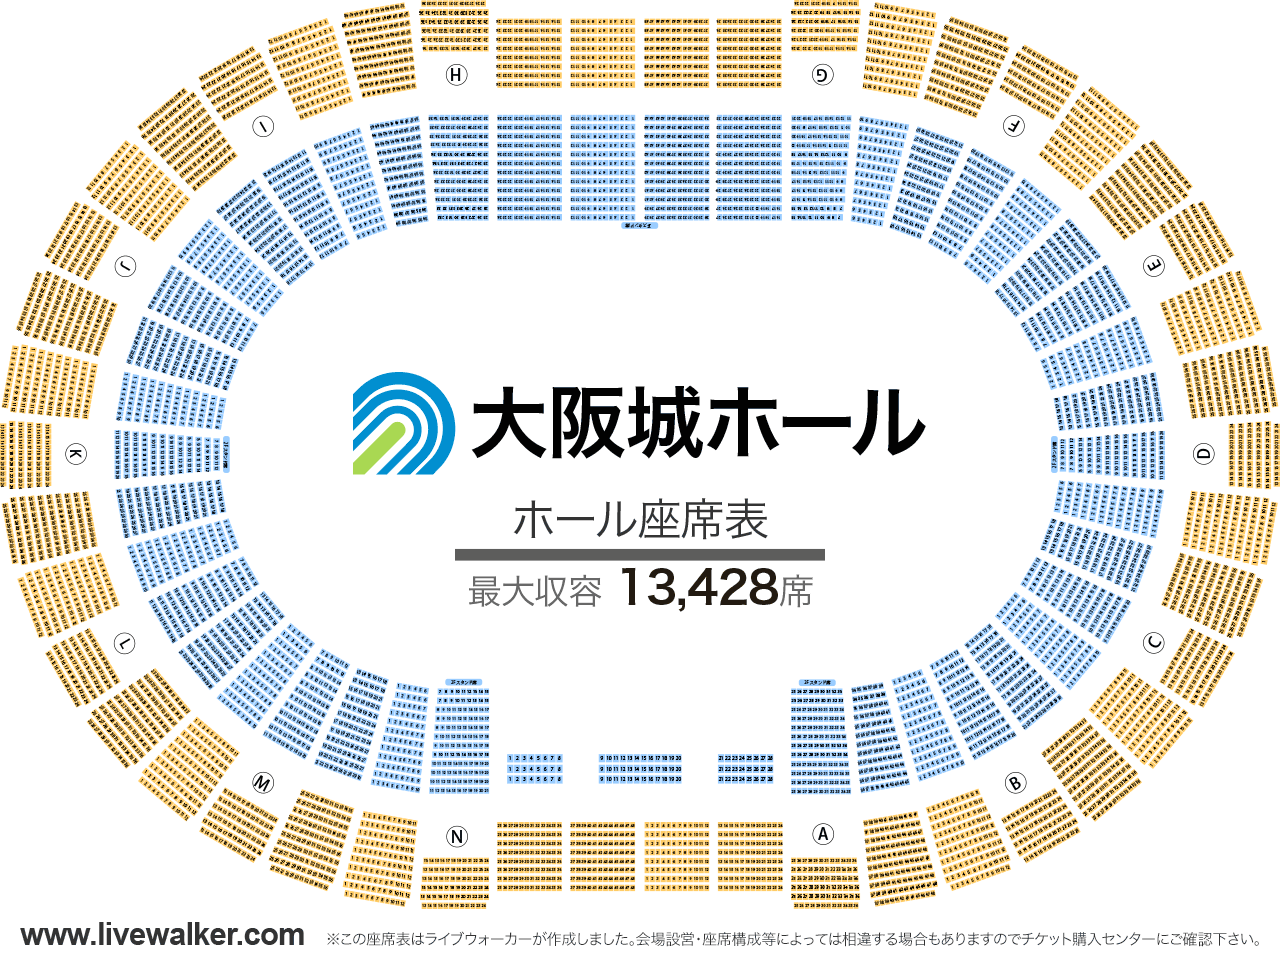 大阪城ホールホールの座席表